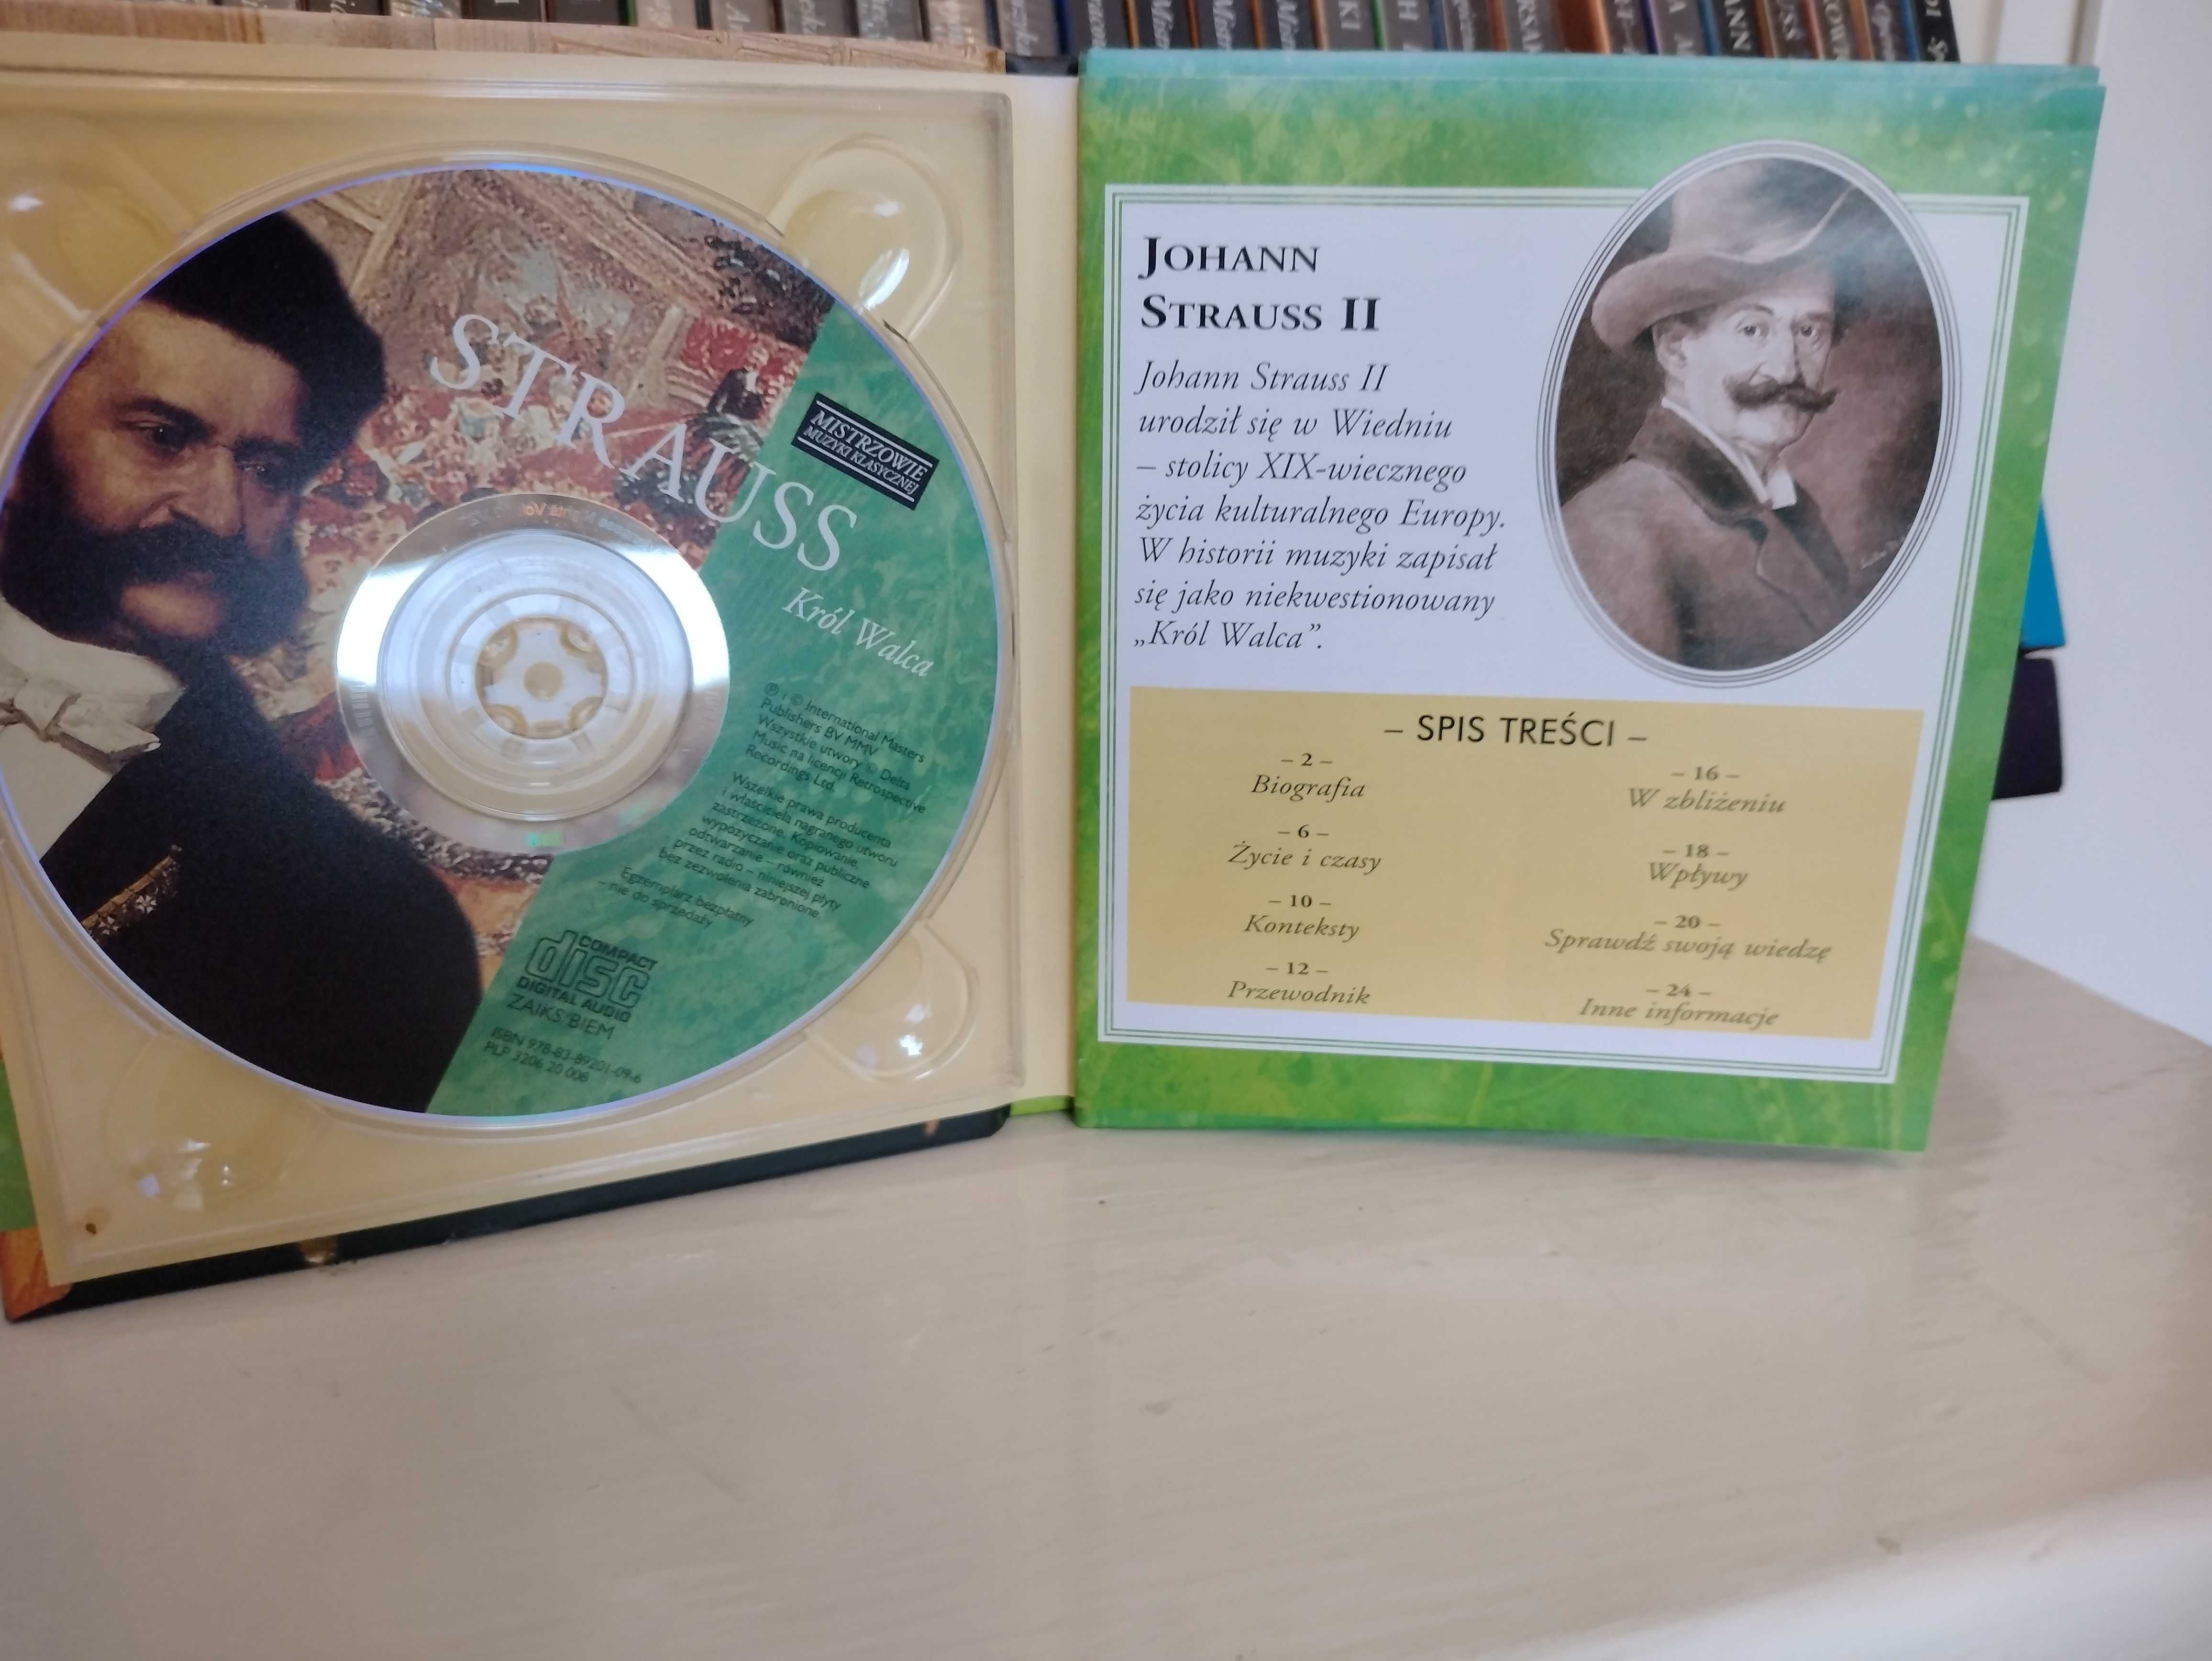 kolekcja płyt CD z muzyką klasyczną "MISTRZOWIE MUZYKI KLASYCZNEJ"